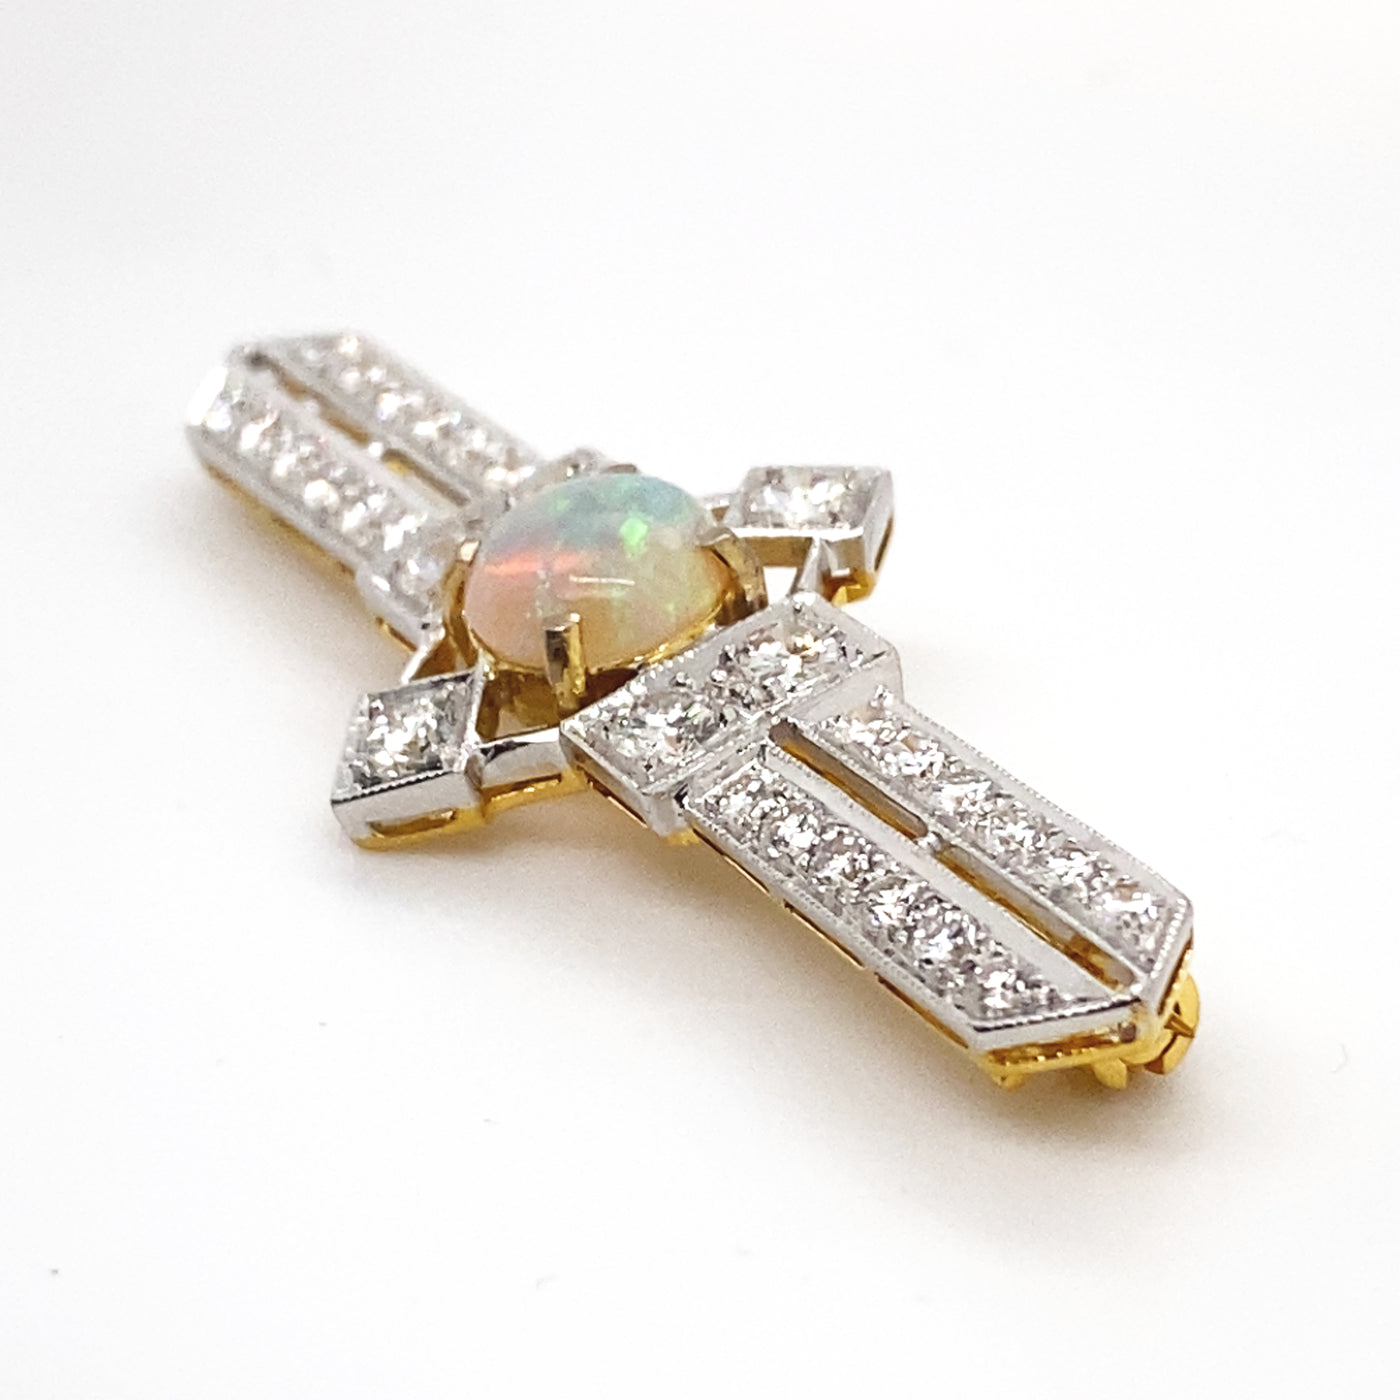 Opal Glam - Stabbrosche mit Opal und Diamanten